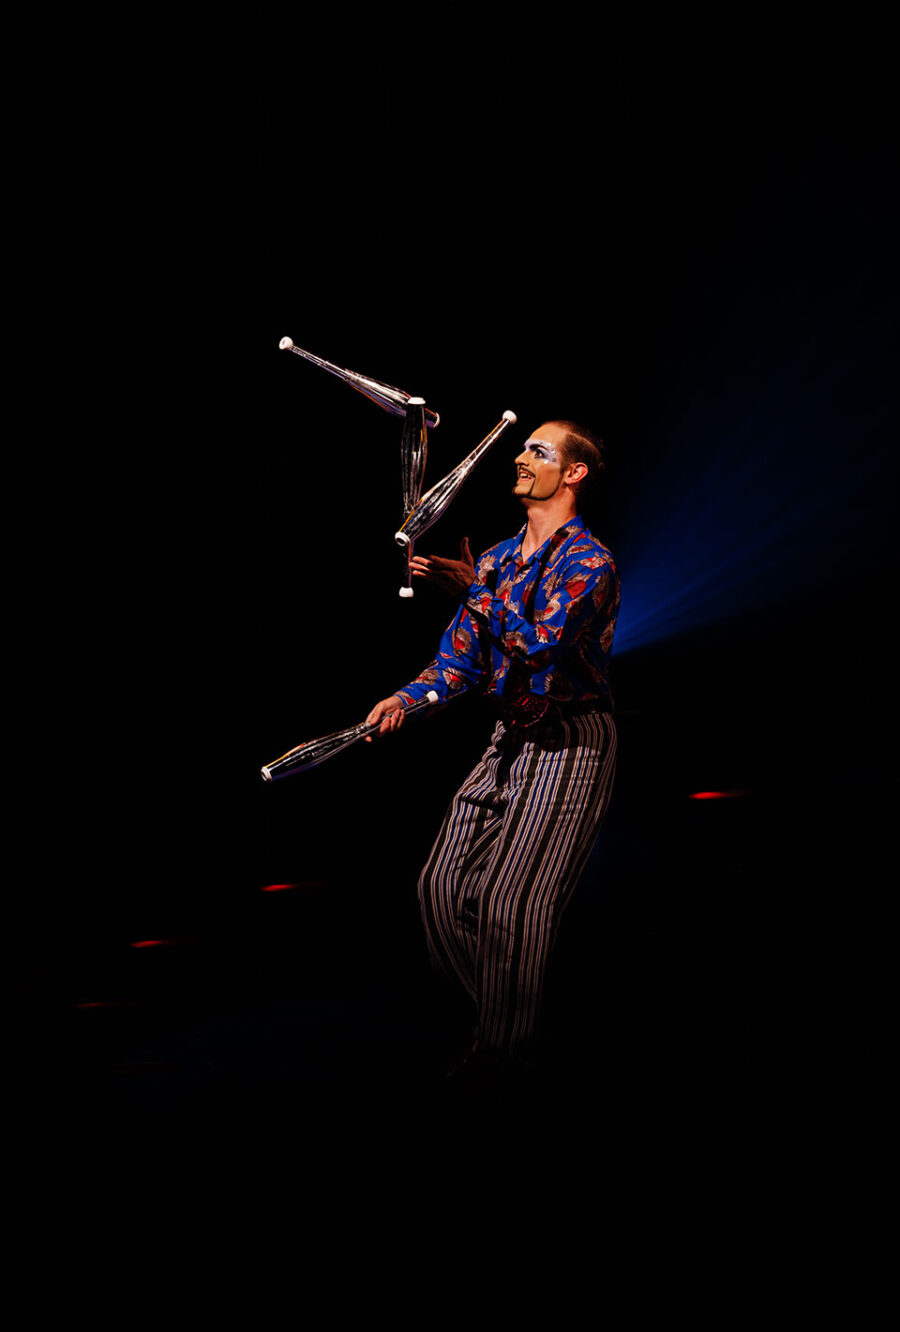 Ein Jongleur mit bemaltem Gesicht und gestreifter Hose jongliert auf der Bühne mit drei Keulen im Scheinwerferlicht.